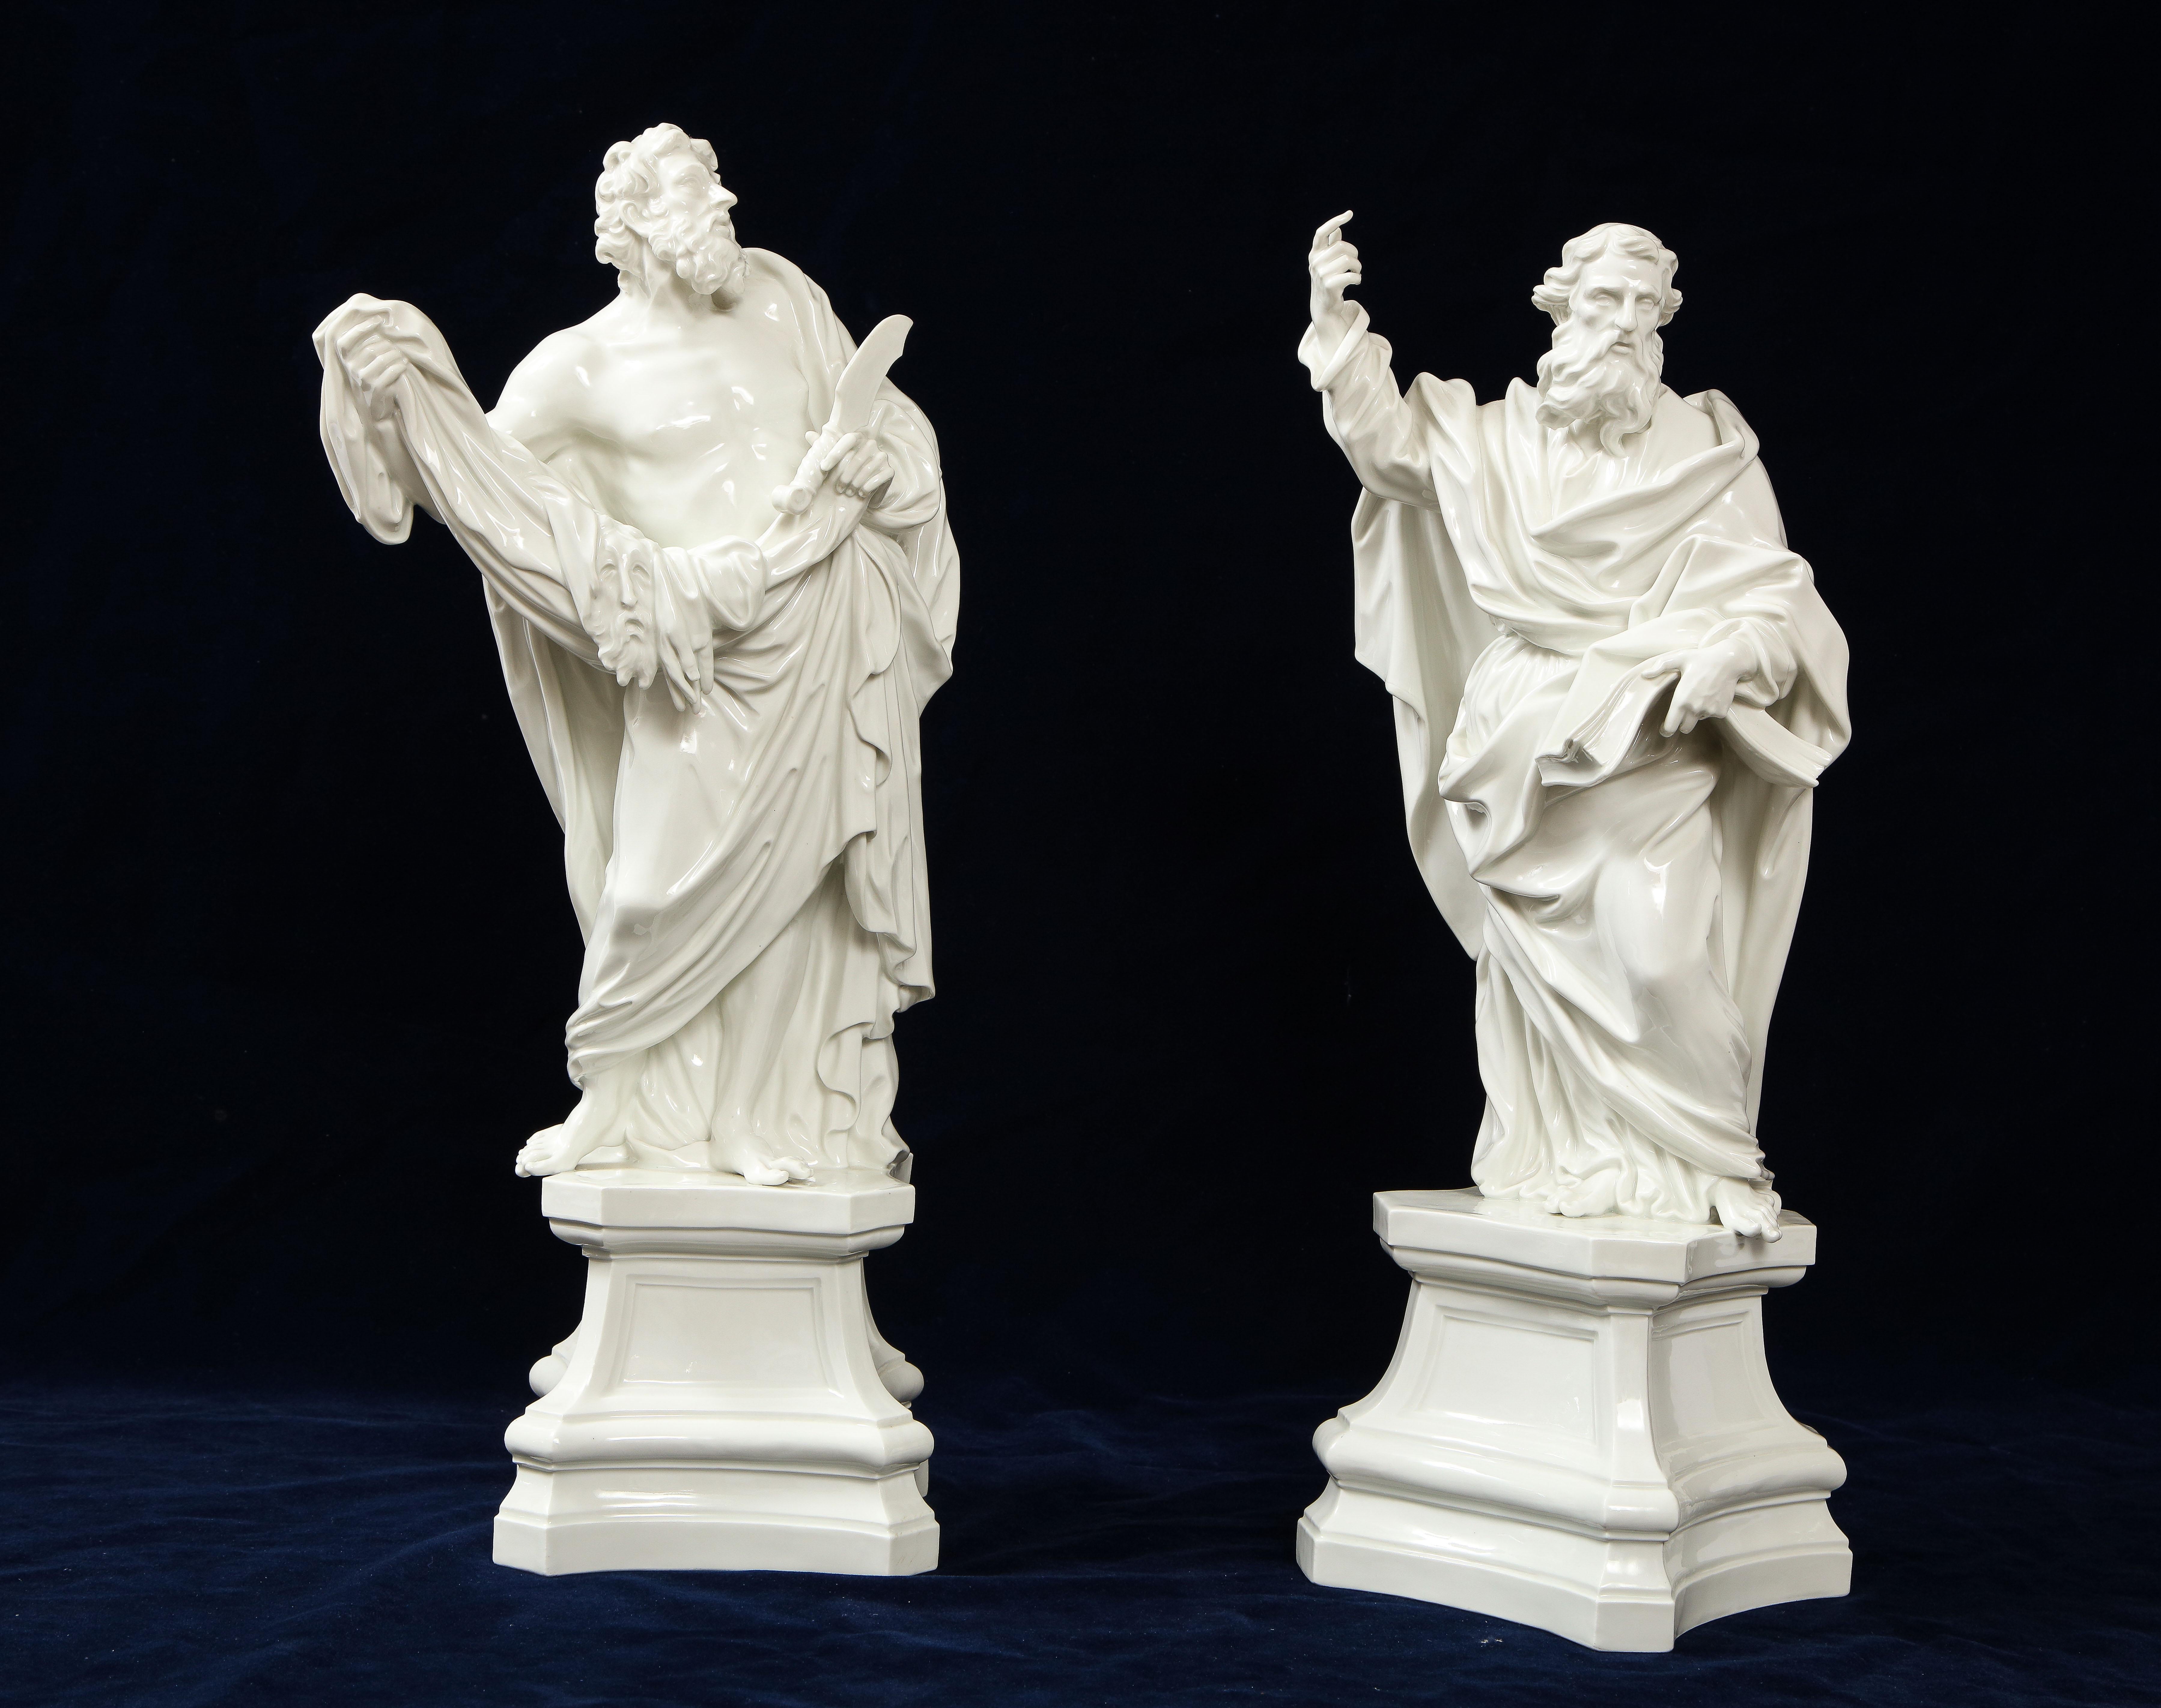 Incroyable et très rare paire de figurines blanches en porcelaine de Meissen du XIXe siècle représentant respectivement saint Jacques, frère de saint Jean l'évangéliste, et saint Paul. Chacun est magnifiquement sculpté à la main avec des détails